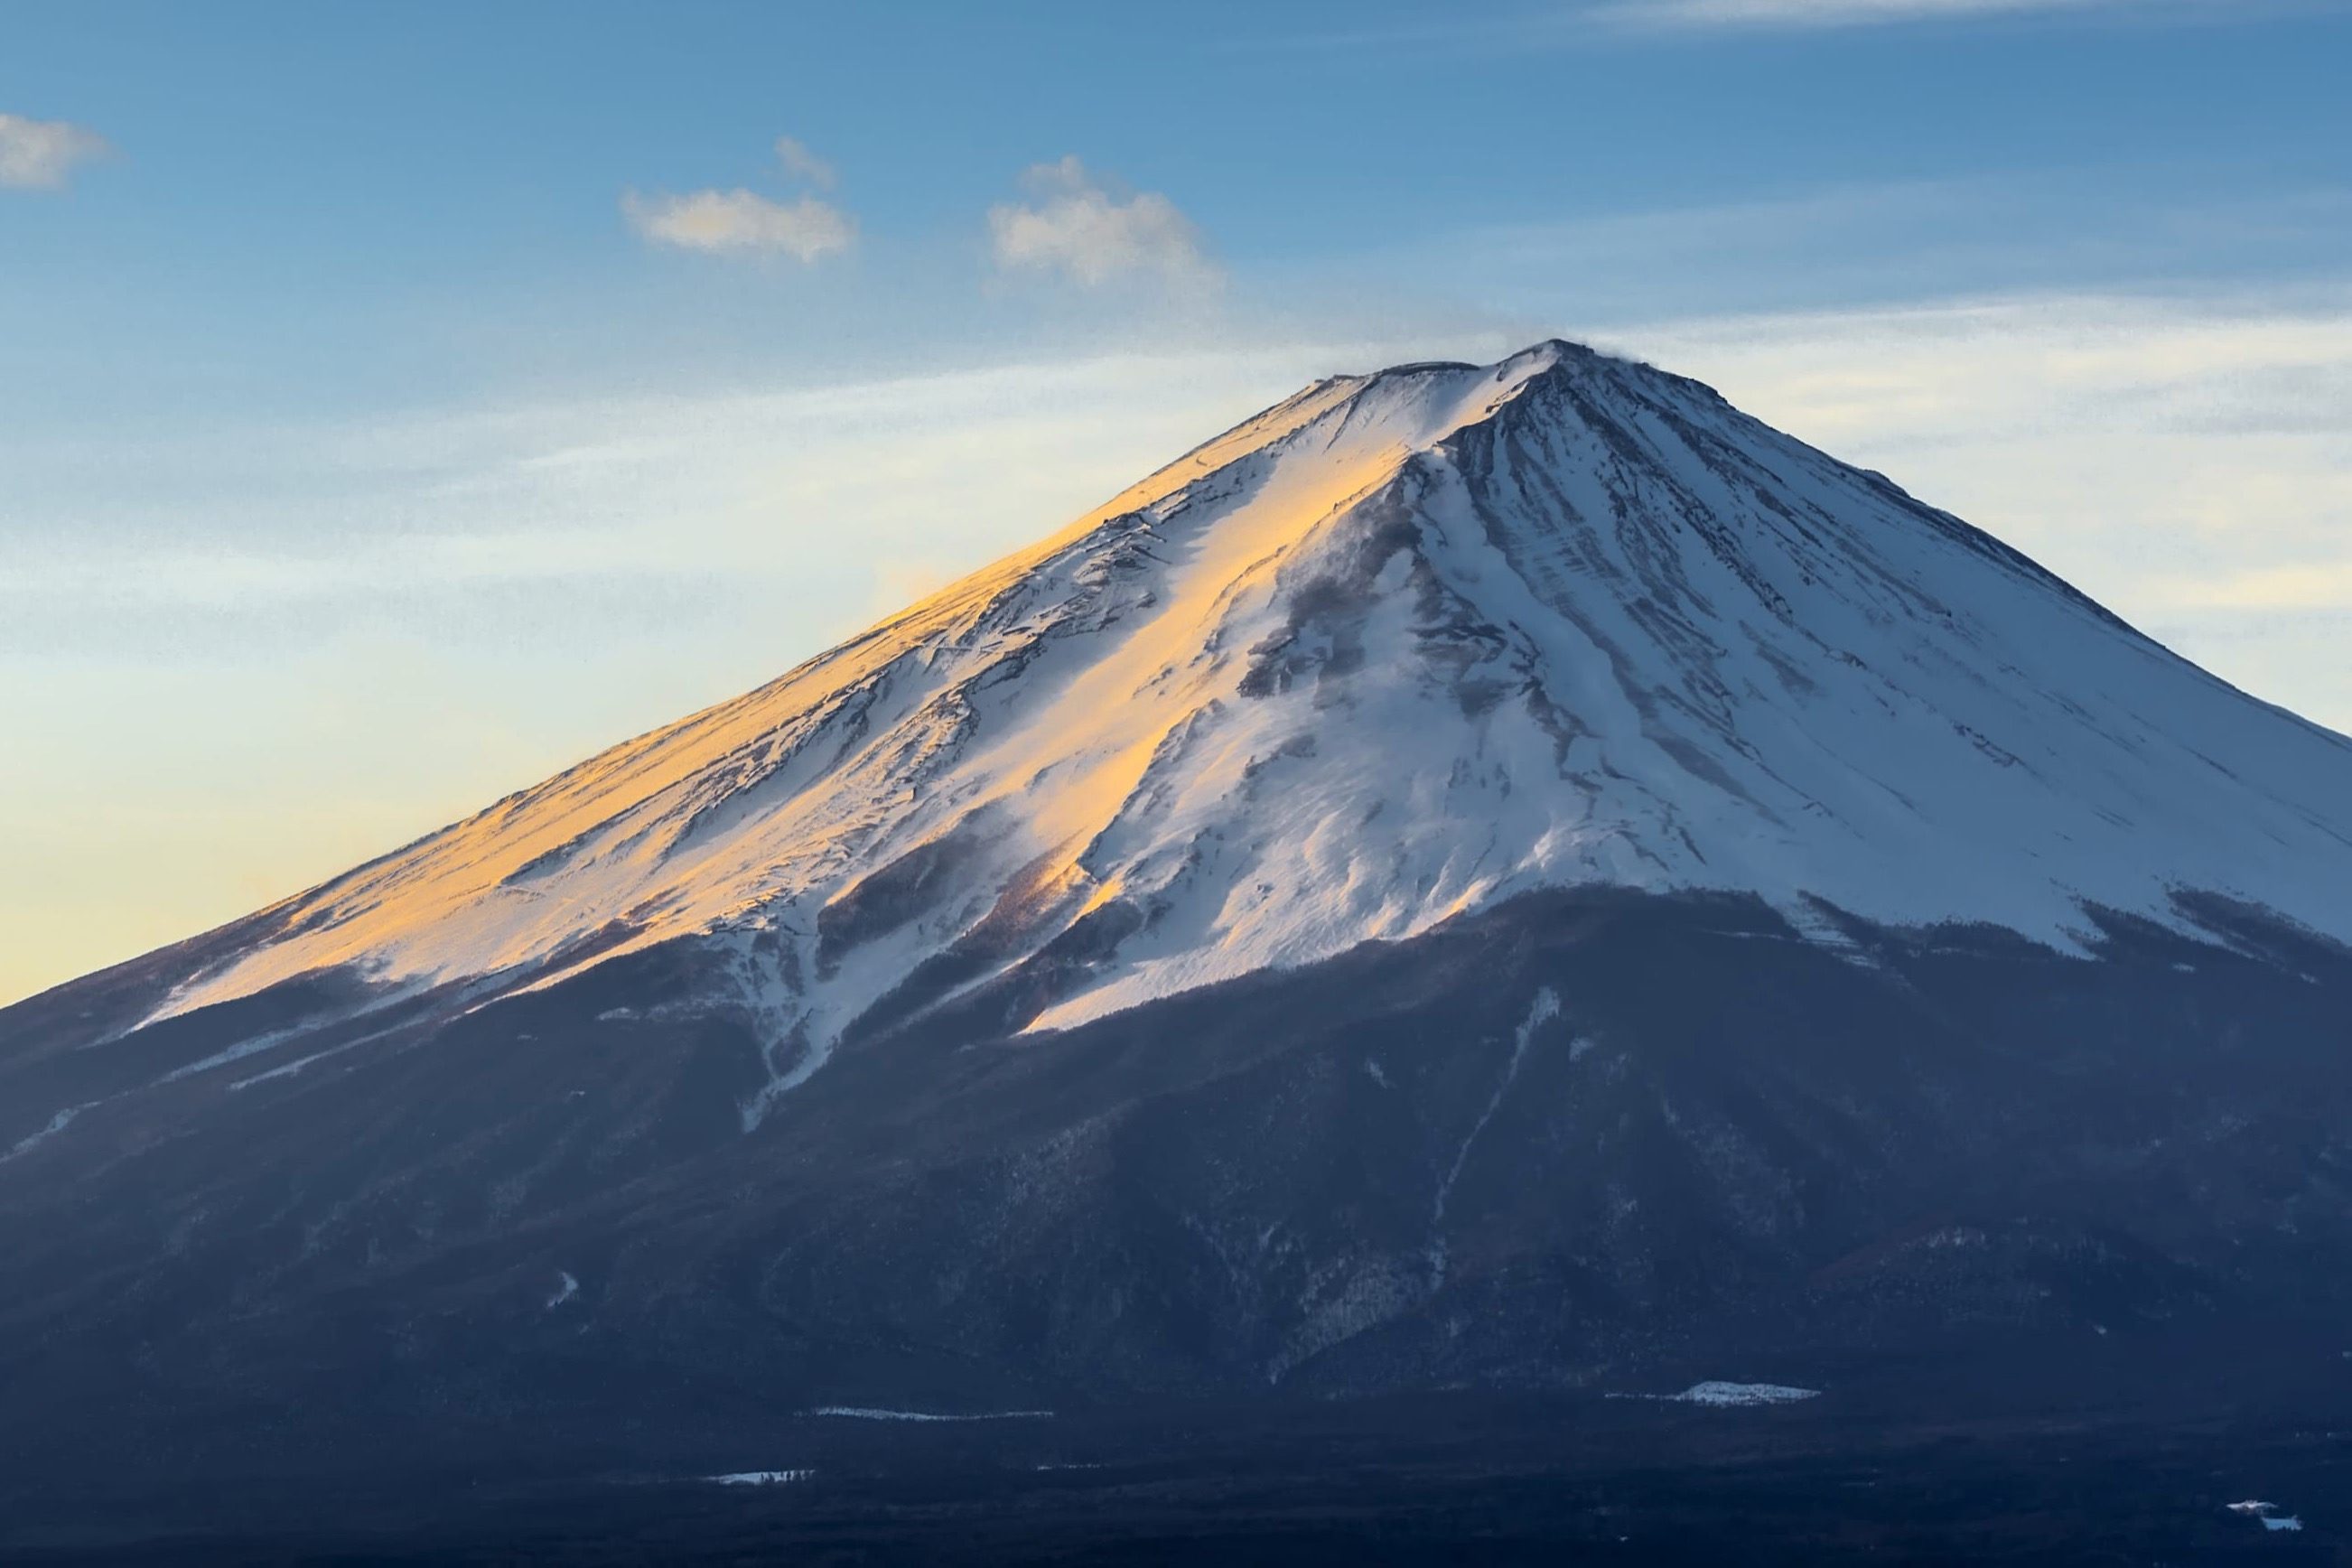 富士山登山の配信中滑落した男性 遺体で発見か 増える配信者の事故 ニコニコニュース